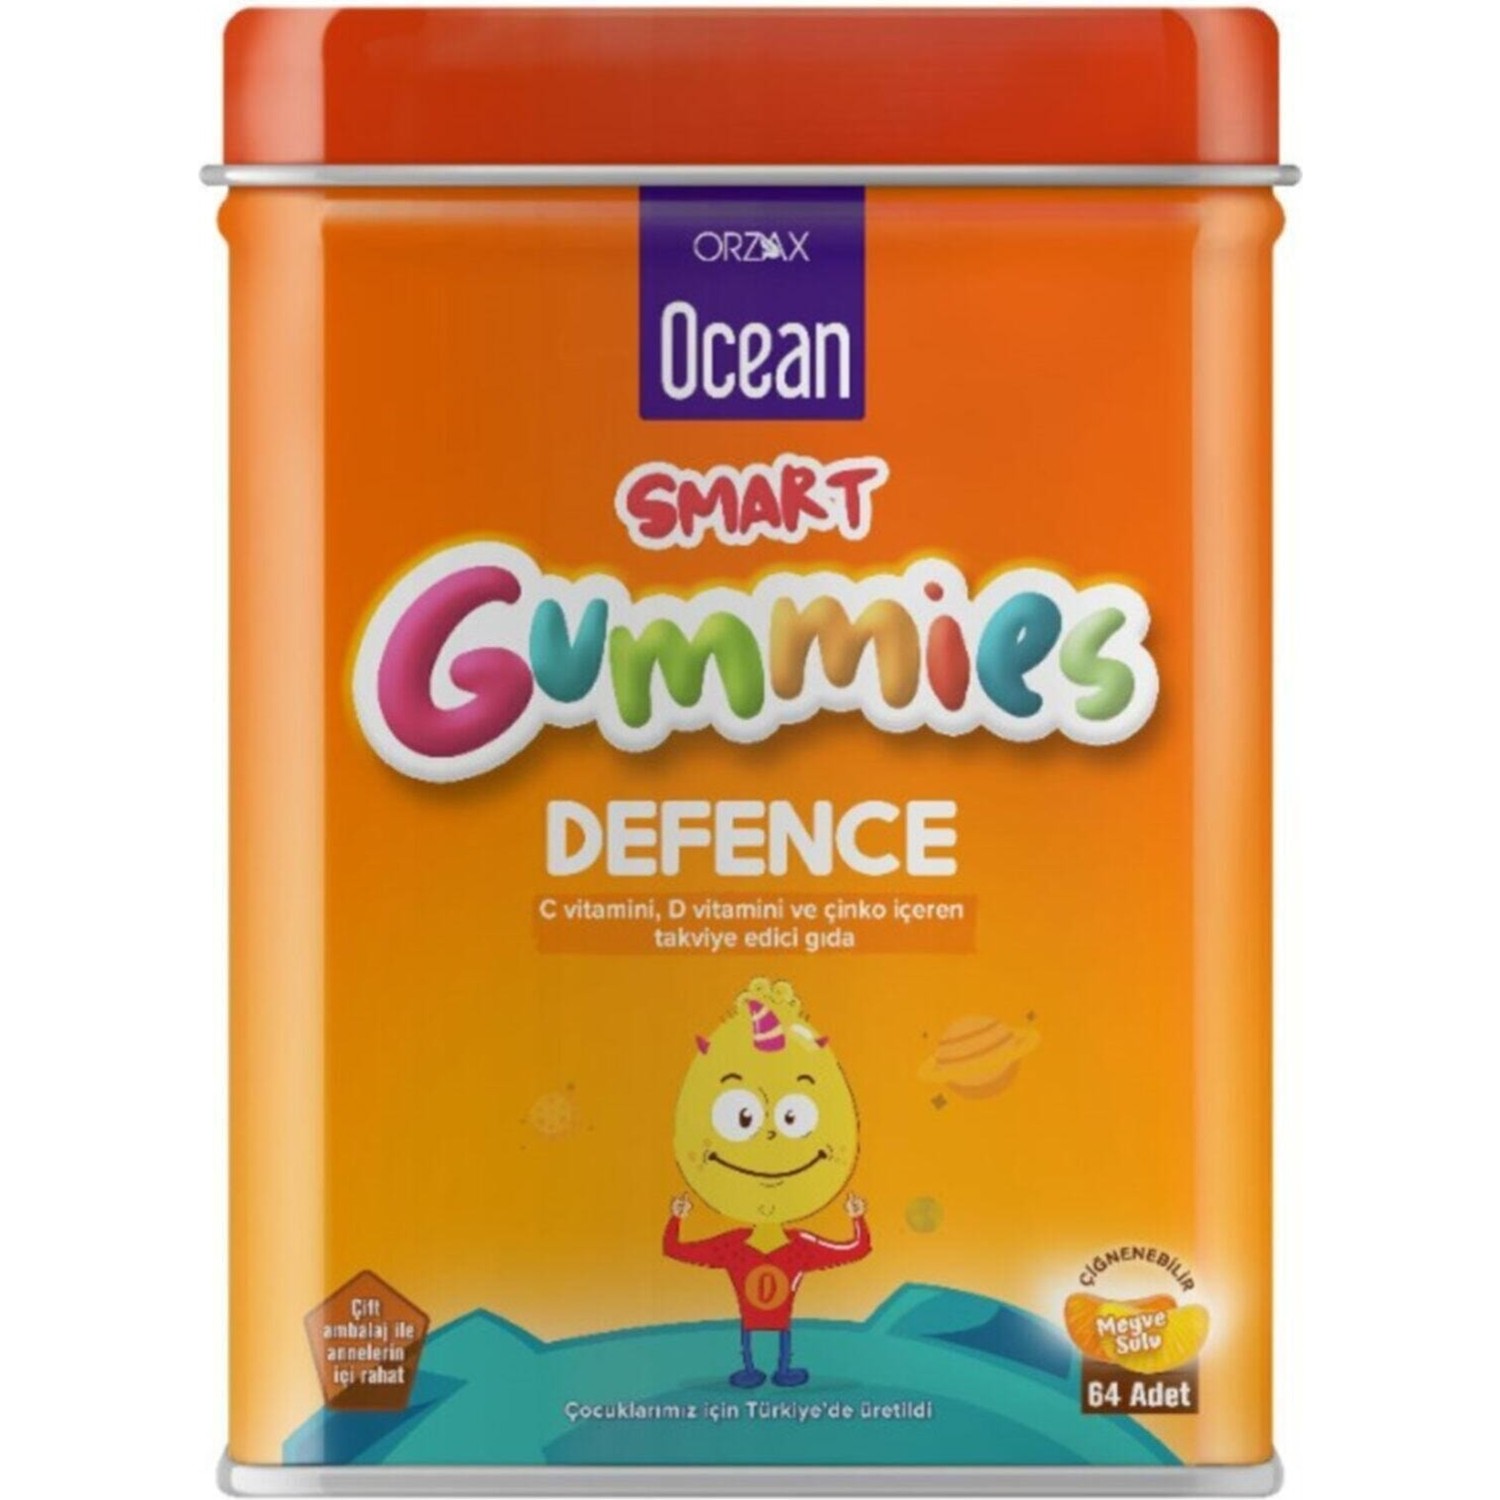 Пищевая добавка Ocean Smart Gummies Defense Cigneme, 64 таблетки биологически активная добавка solgar u cubes vitamin c gummies 90 шт